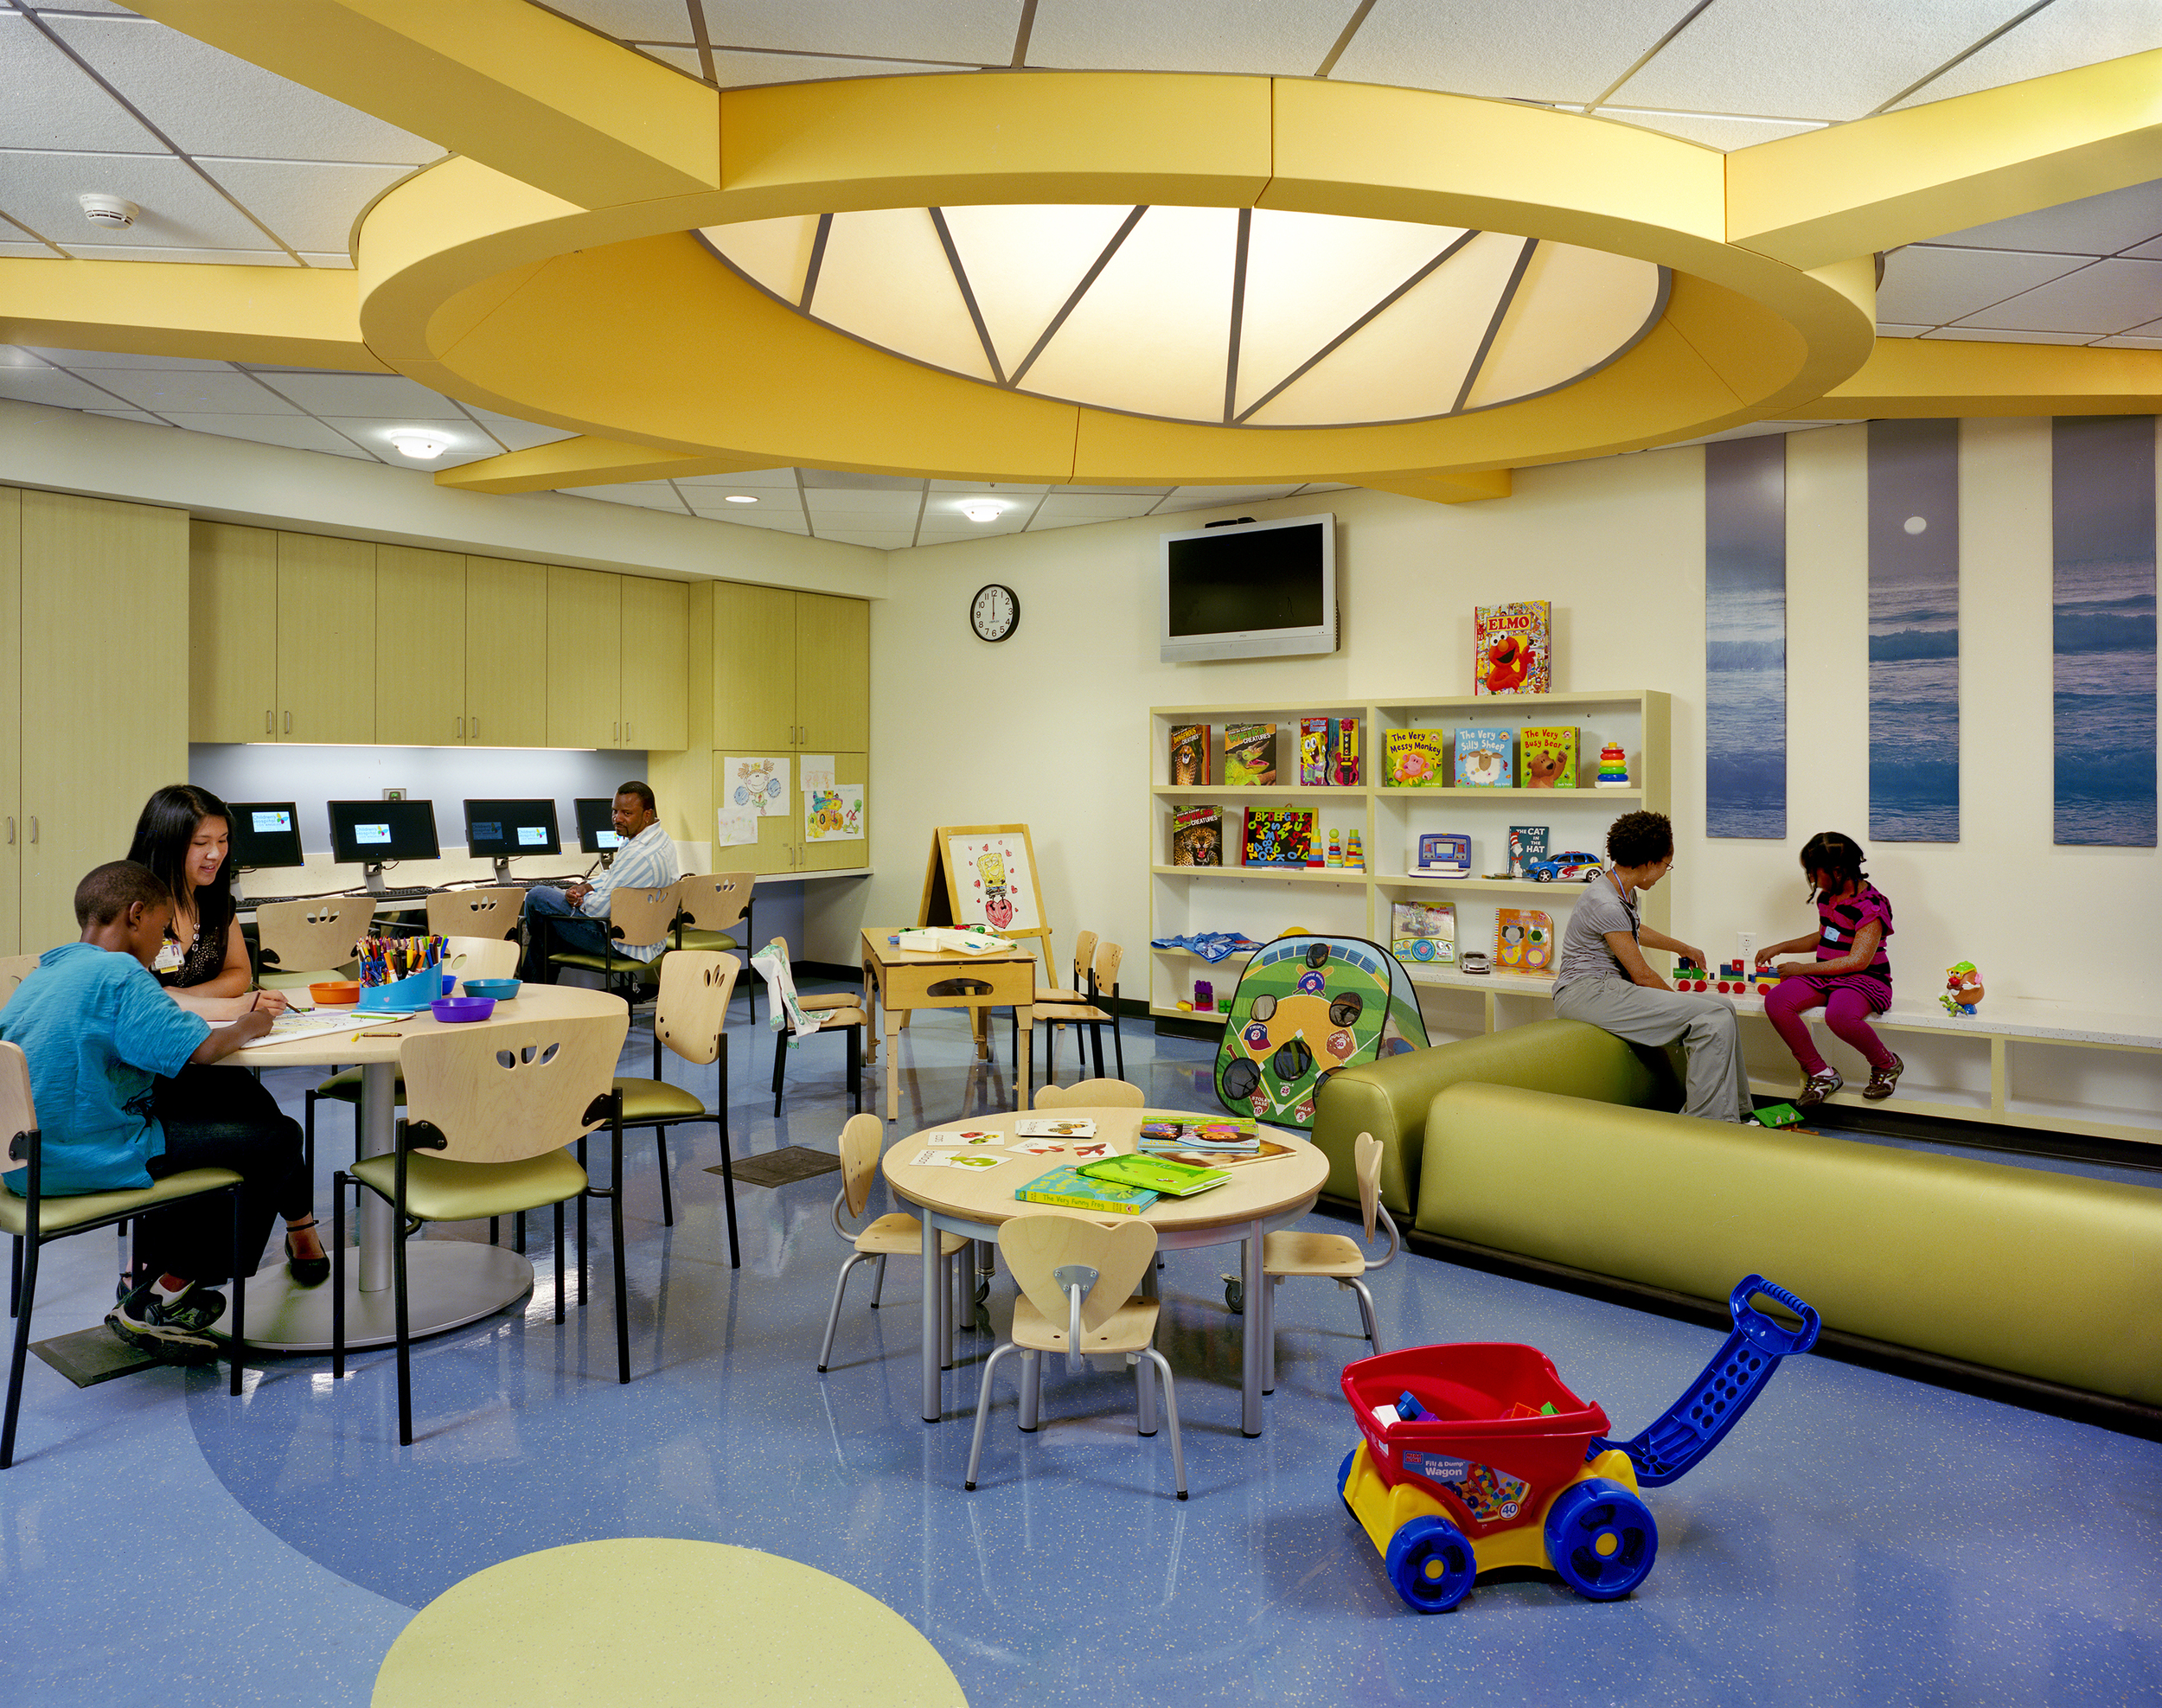  LA Children's Hospital  ZGF 